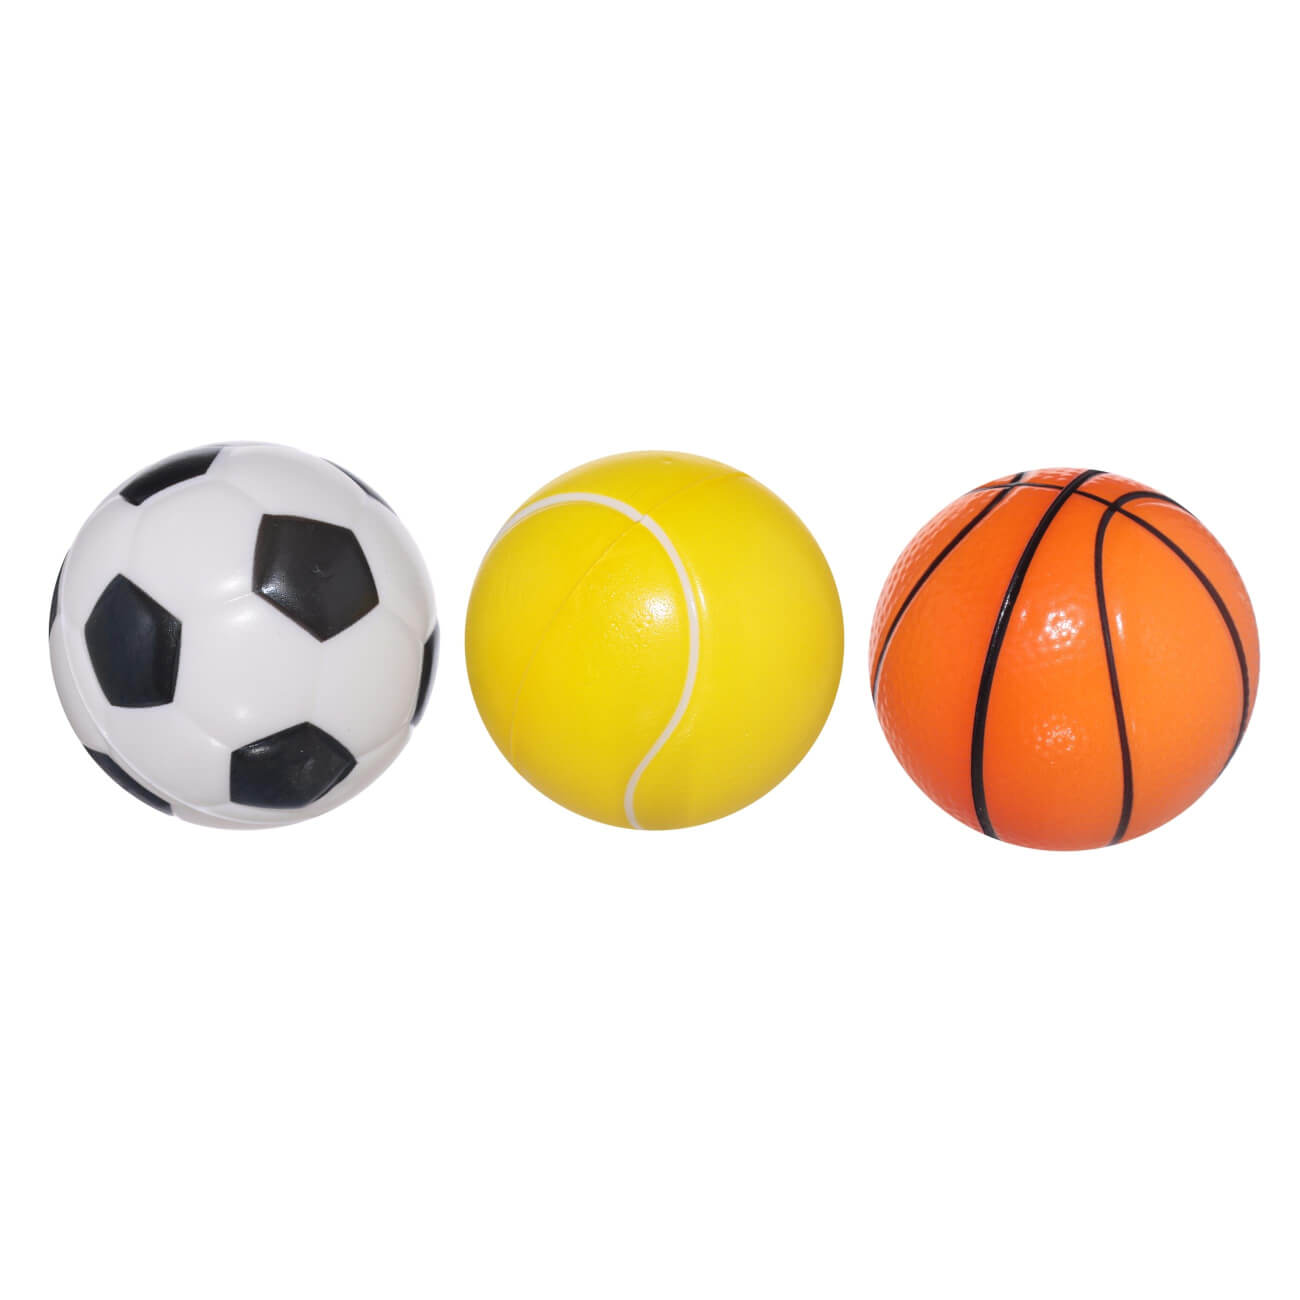 Мяч, 6 см, 3 шт, полиуретан, цветной, Футбол/Баскетбол/Теннис, Game изображение № 1